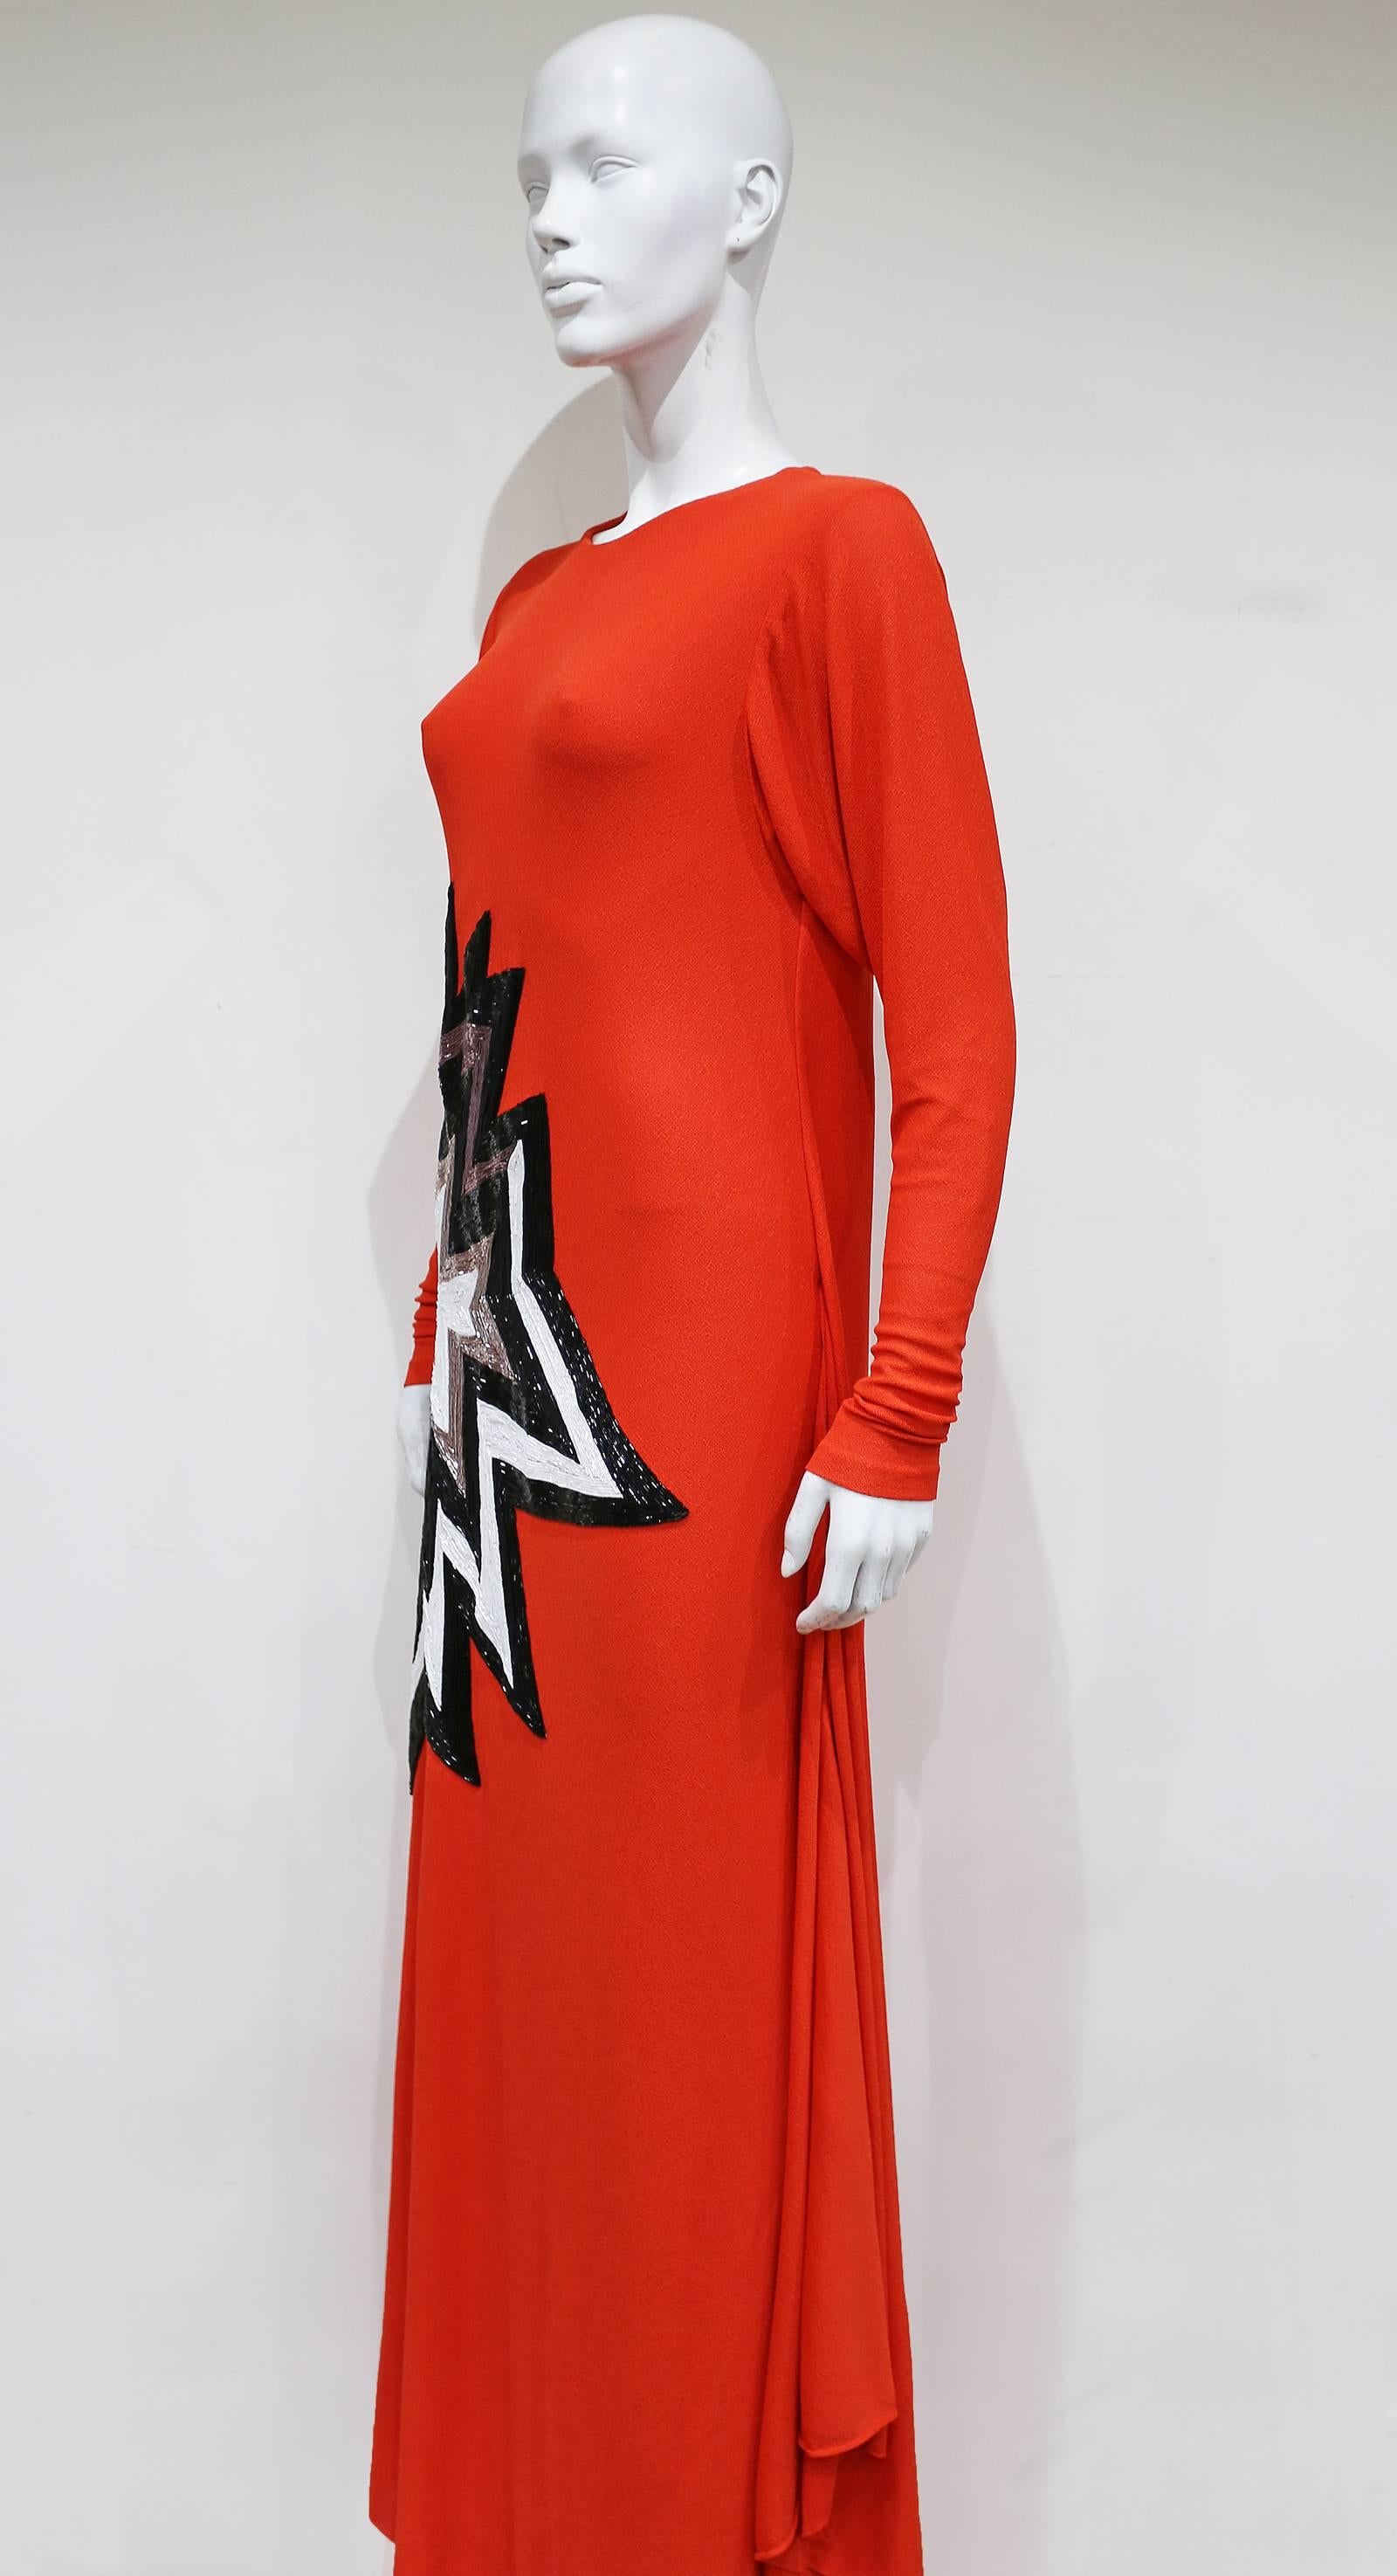 Tom Ford embellished pop art inspired coral evening dress, c. 2013 1